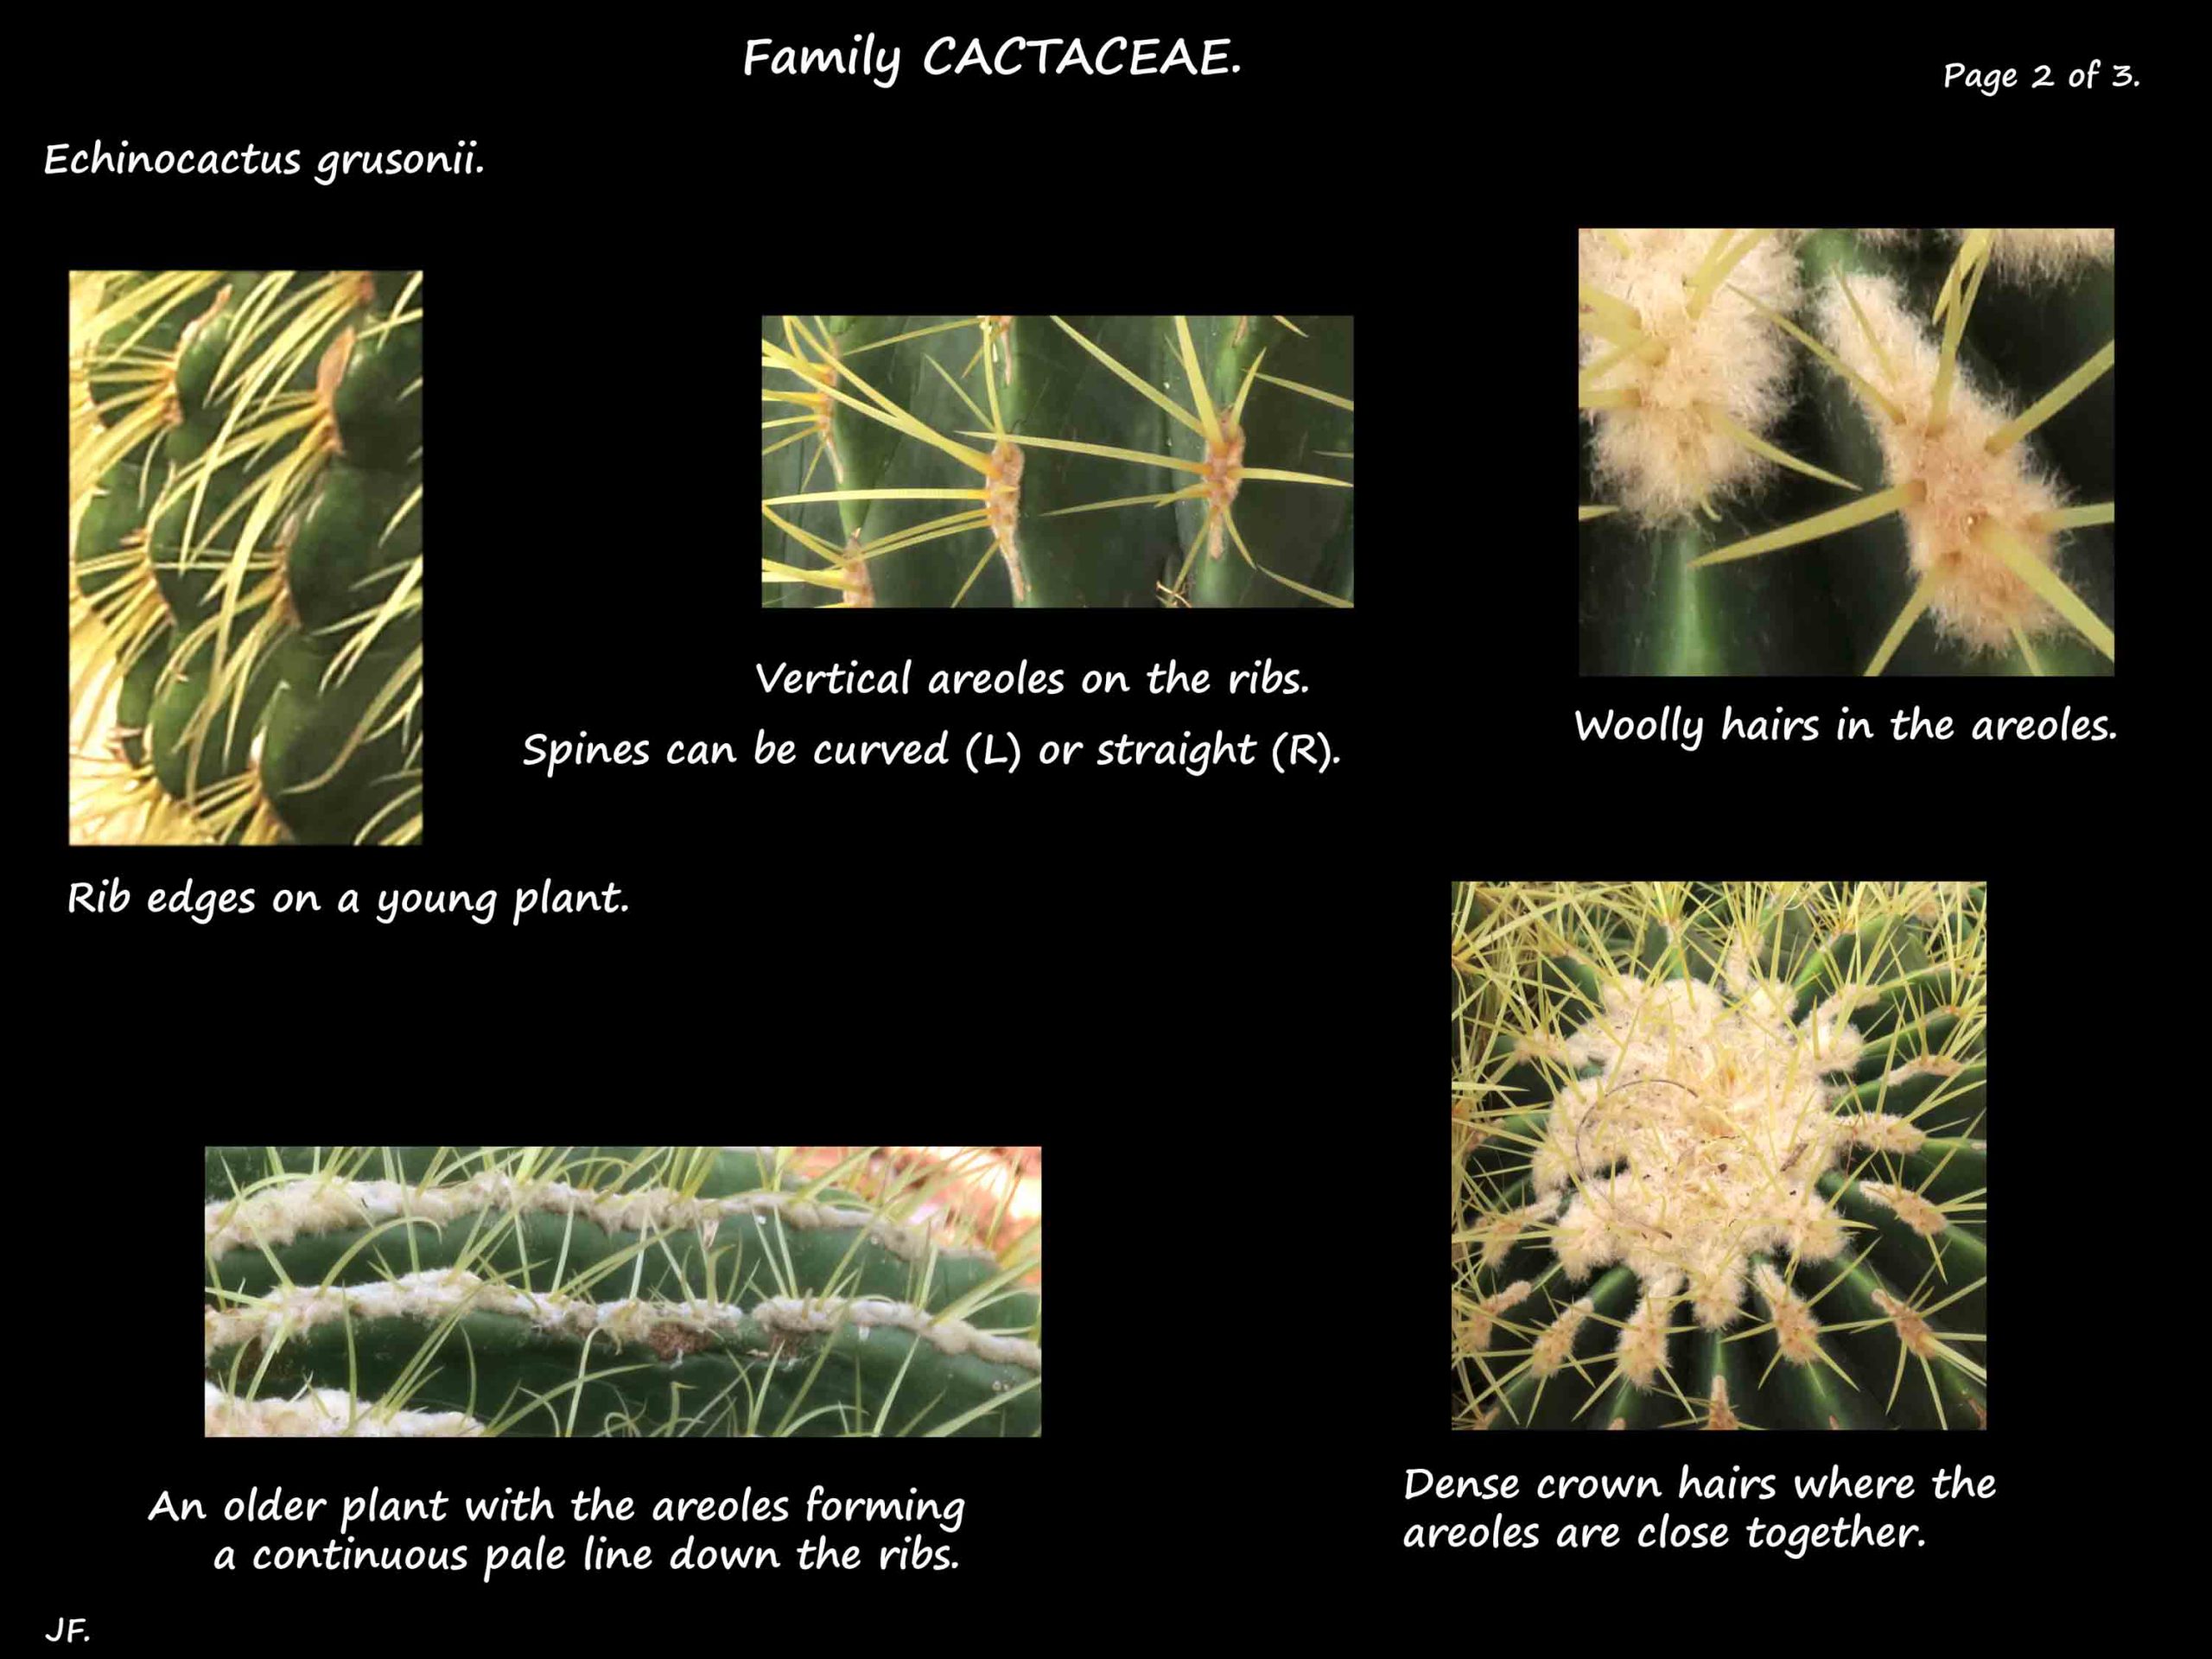 2 Echinocactus areoles